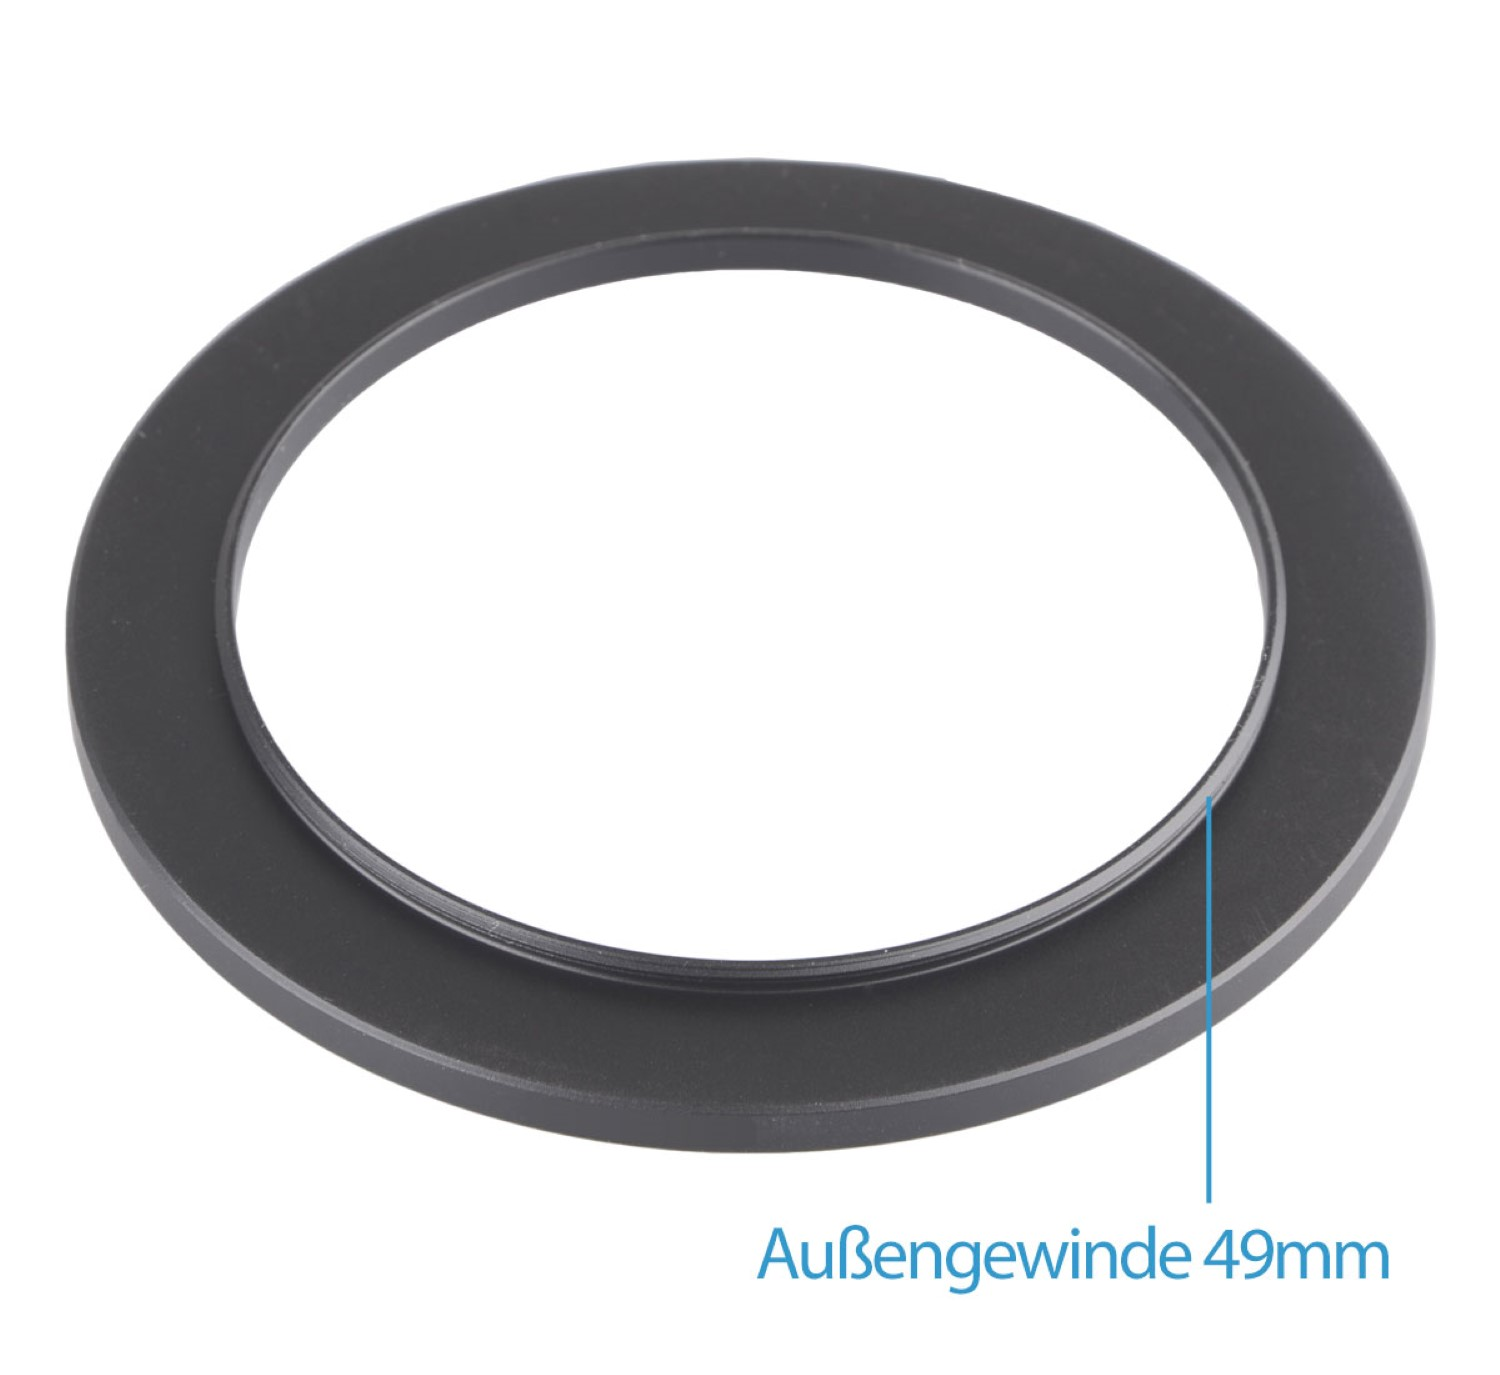 Objektive für mit Filtergewinde AYEX Step-Up Adapter, Black, Ring, passend